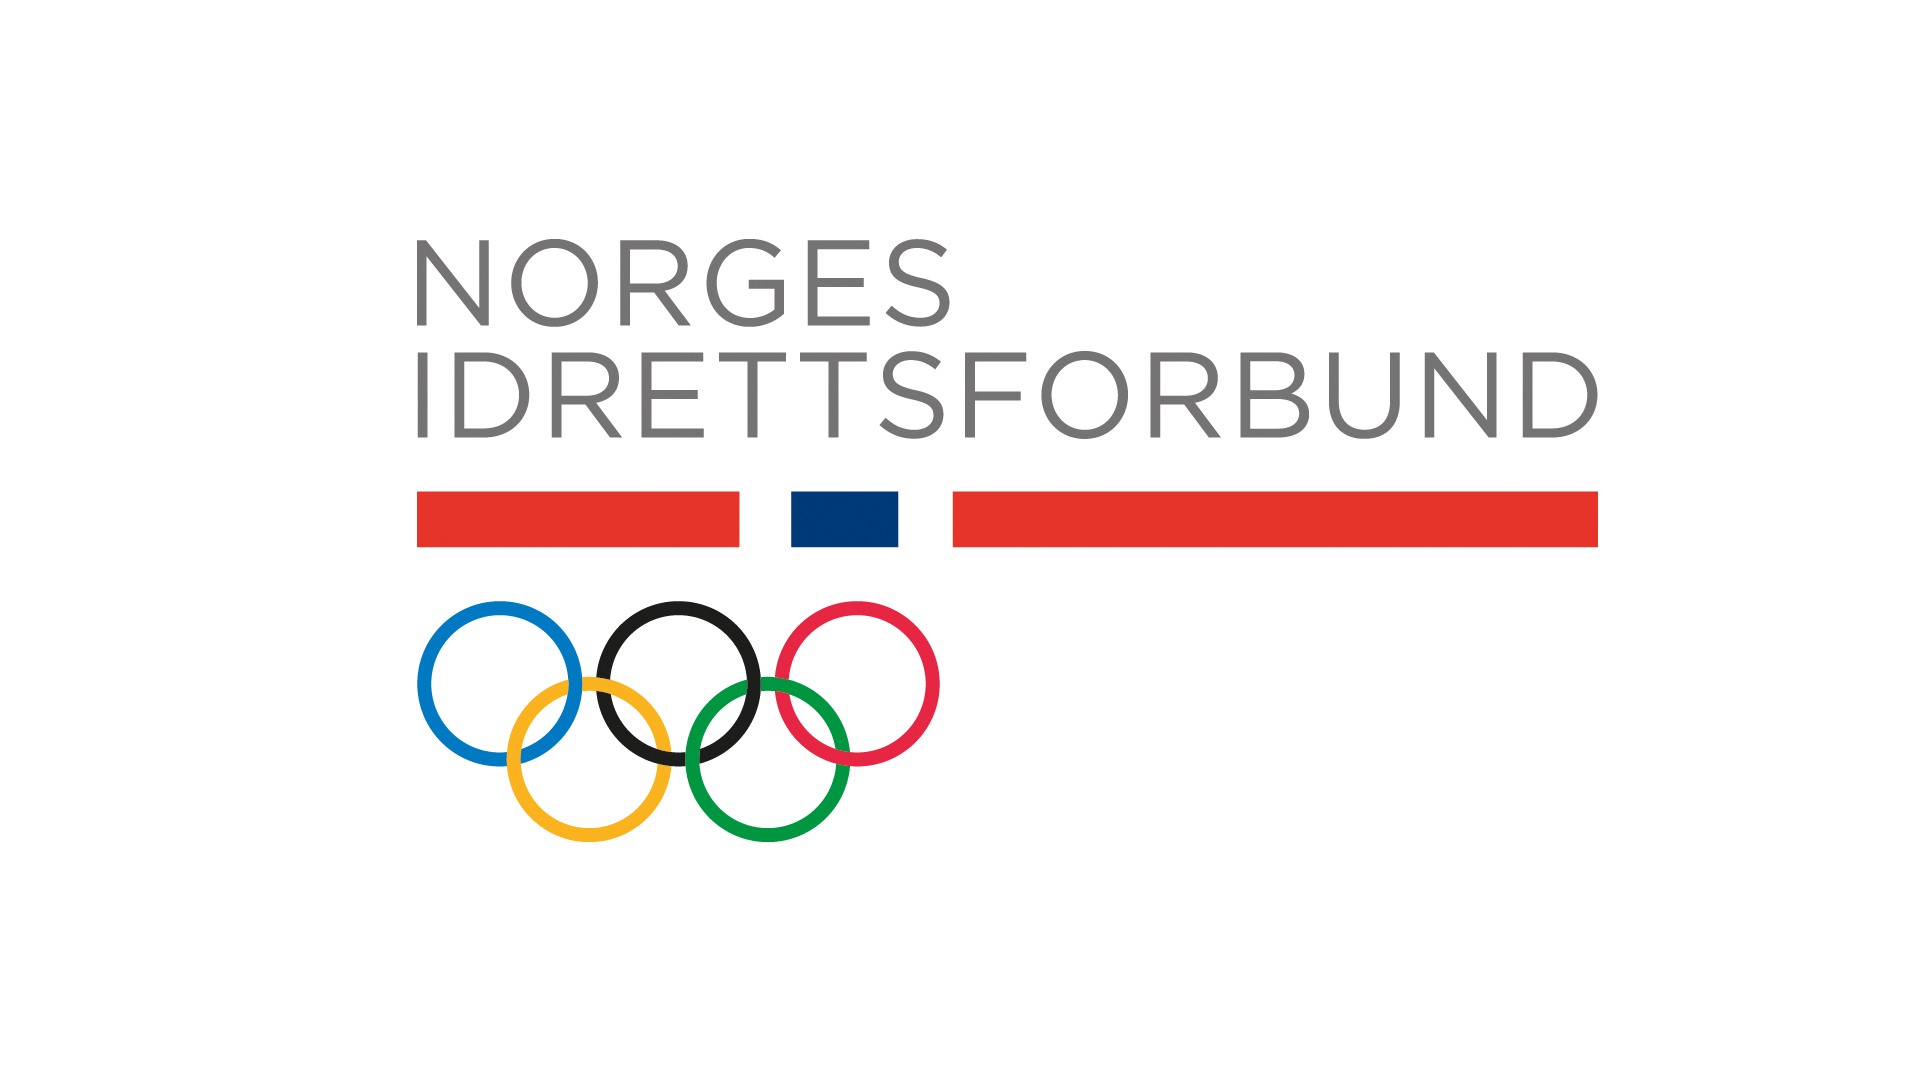 Ny løypemelding for et mulig fremtidig OL/PL i Norge ble presentert på NIFs ledersamling